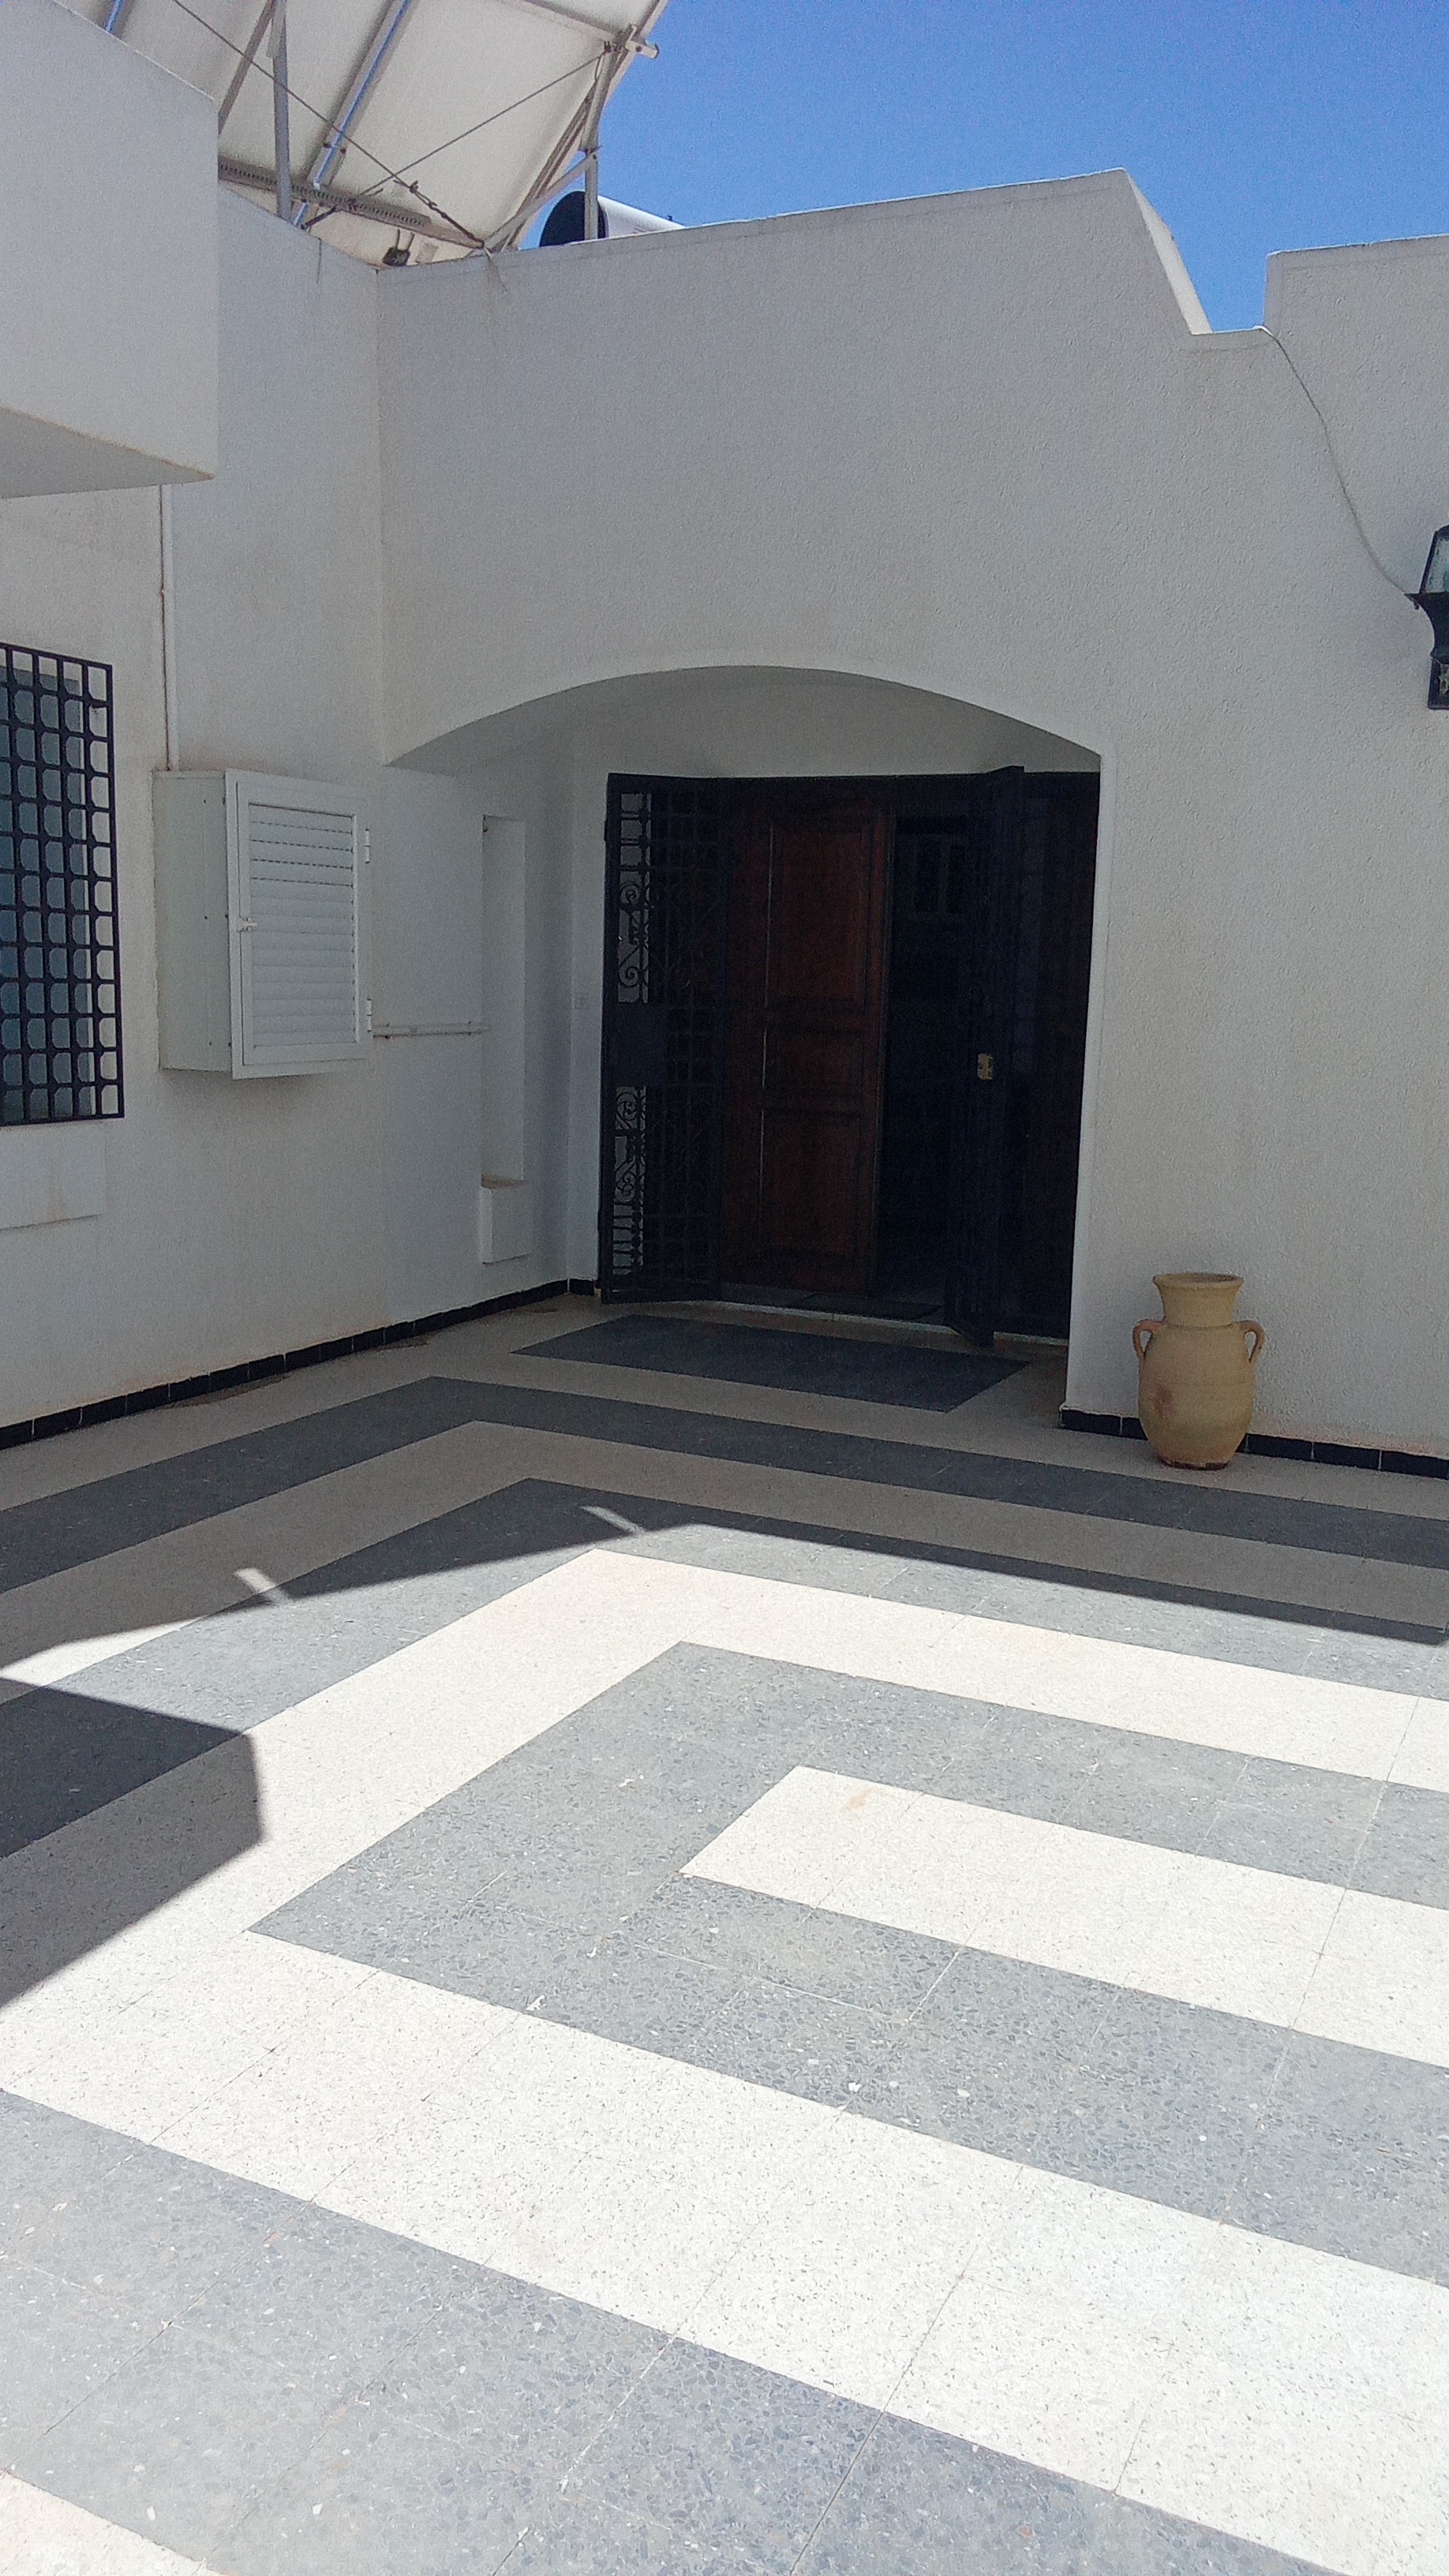 Djerba - Midoun Zone Hoteliere Location Maisons Villa meuble dans la zone touristique djerba